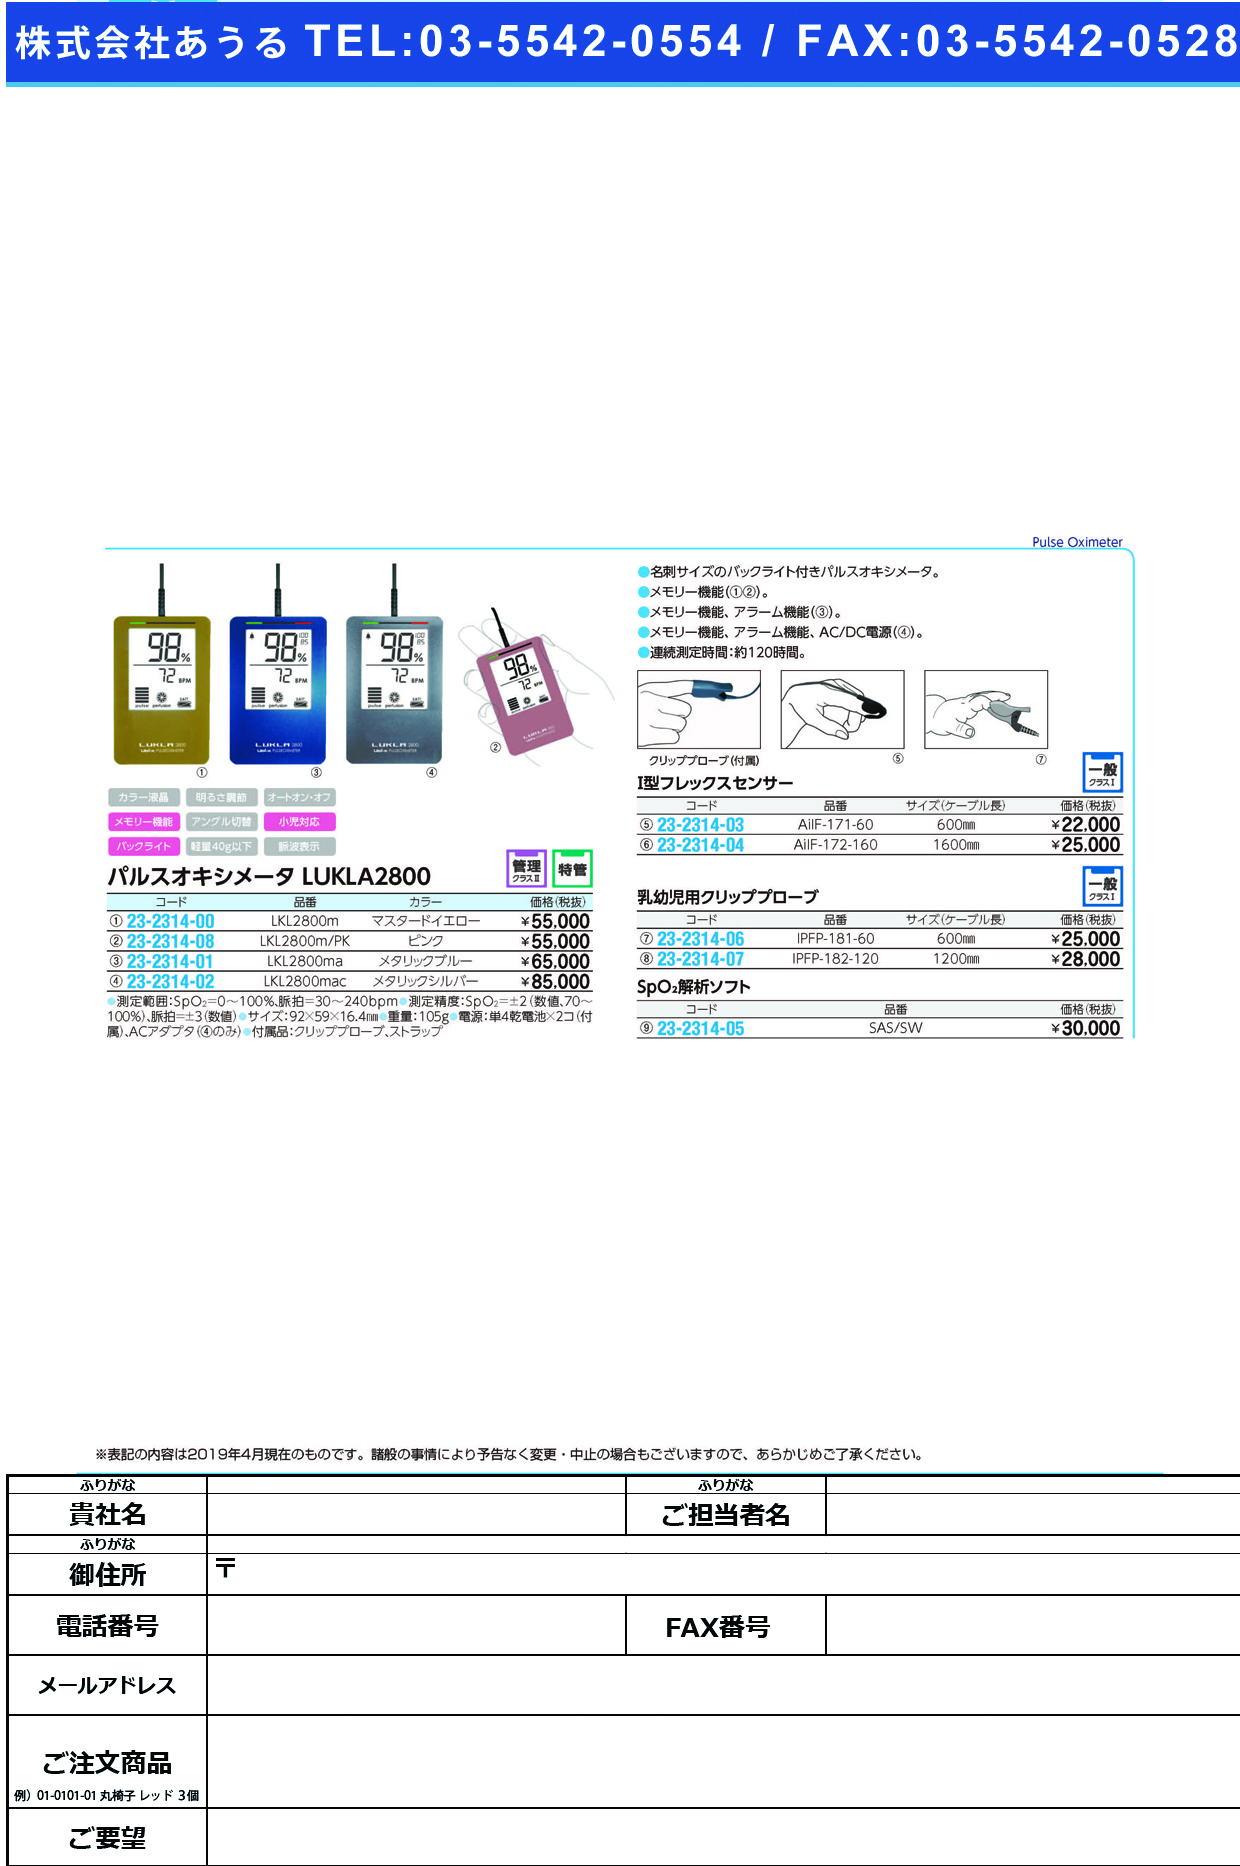 (23-2314-03)Ｉ型フレックスセンサー AIIF-171-60(60CM) Iｶﾞﾀﾌﾚｯｸｽｾﾝｻｰ(ユビックス)【1個単位】【2019年カタログ商品】